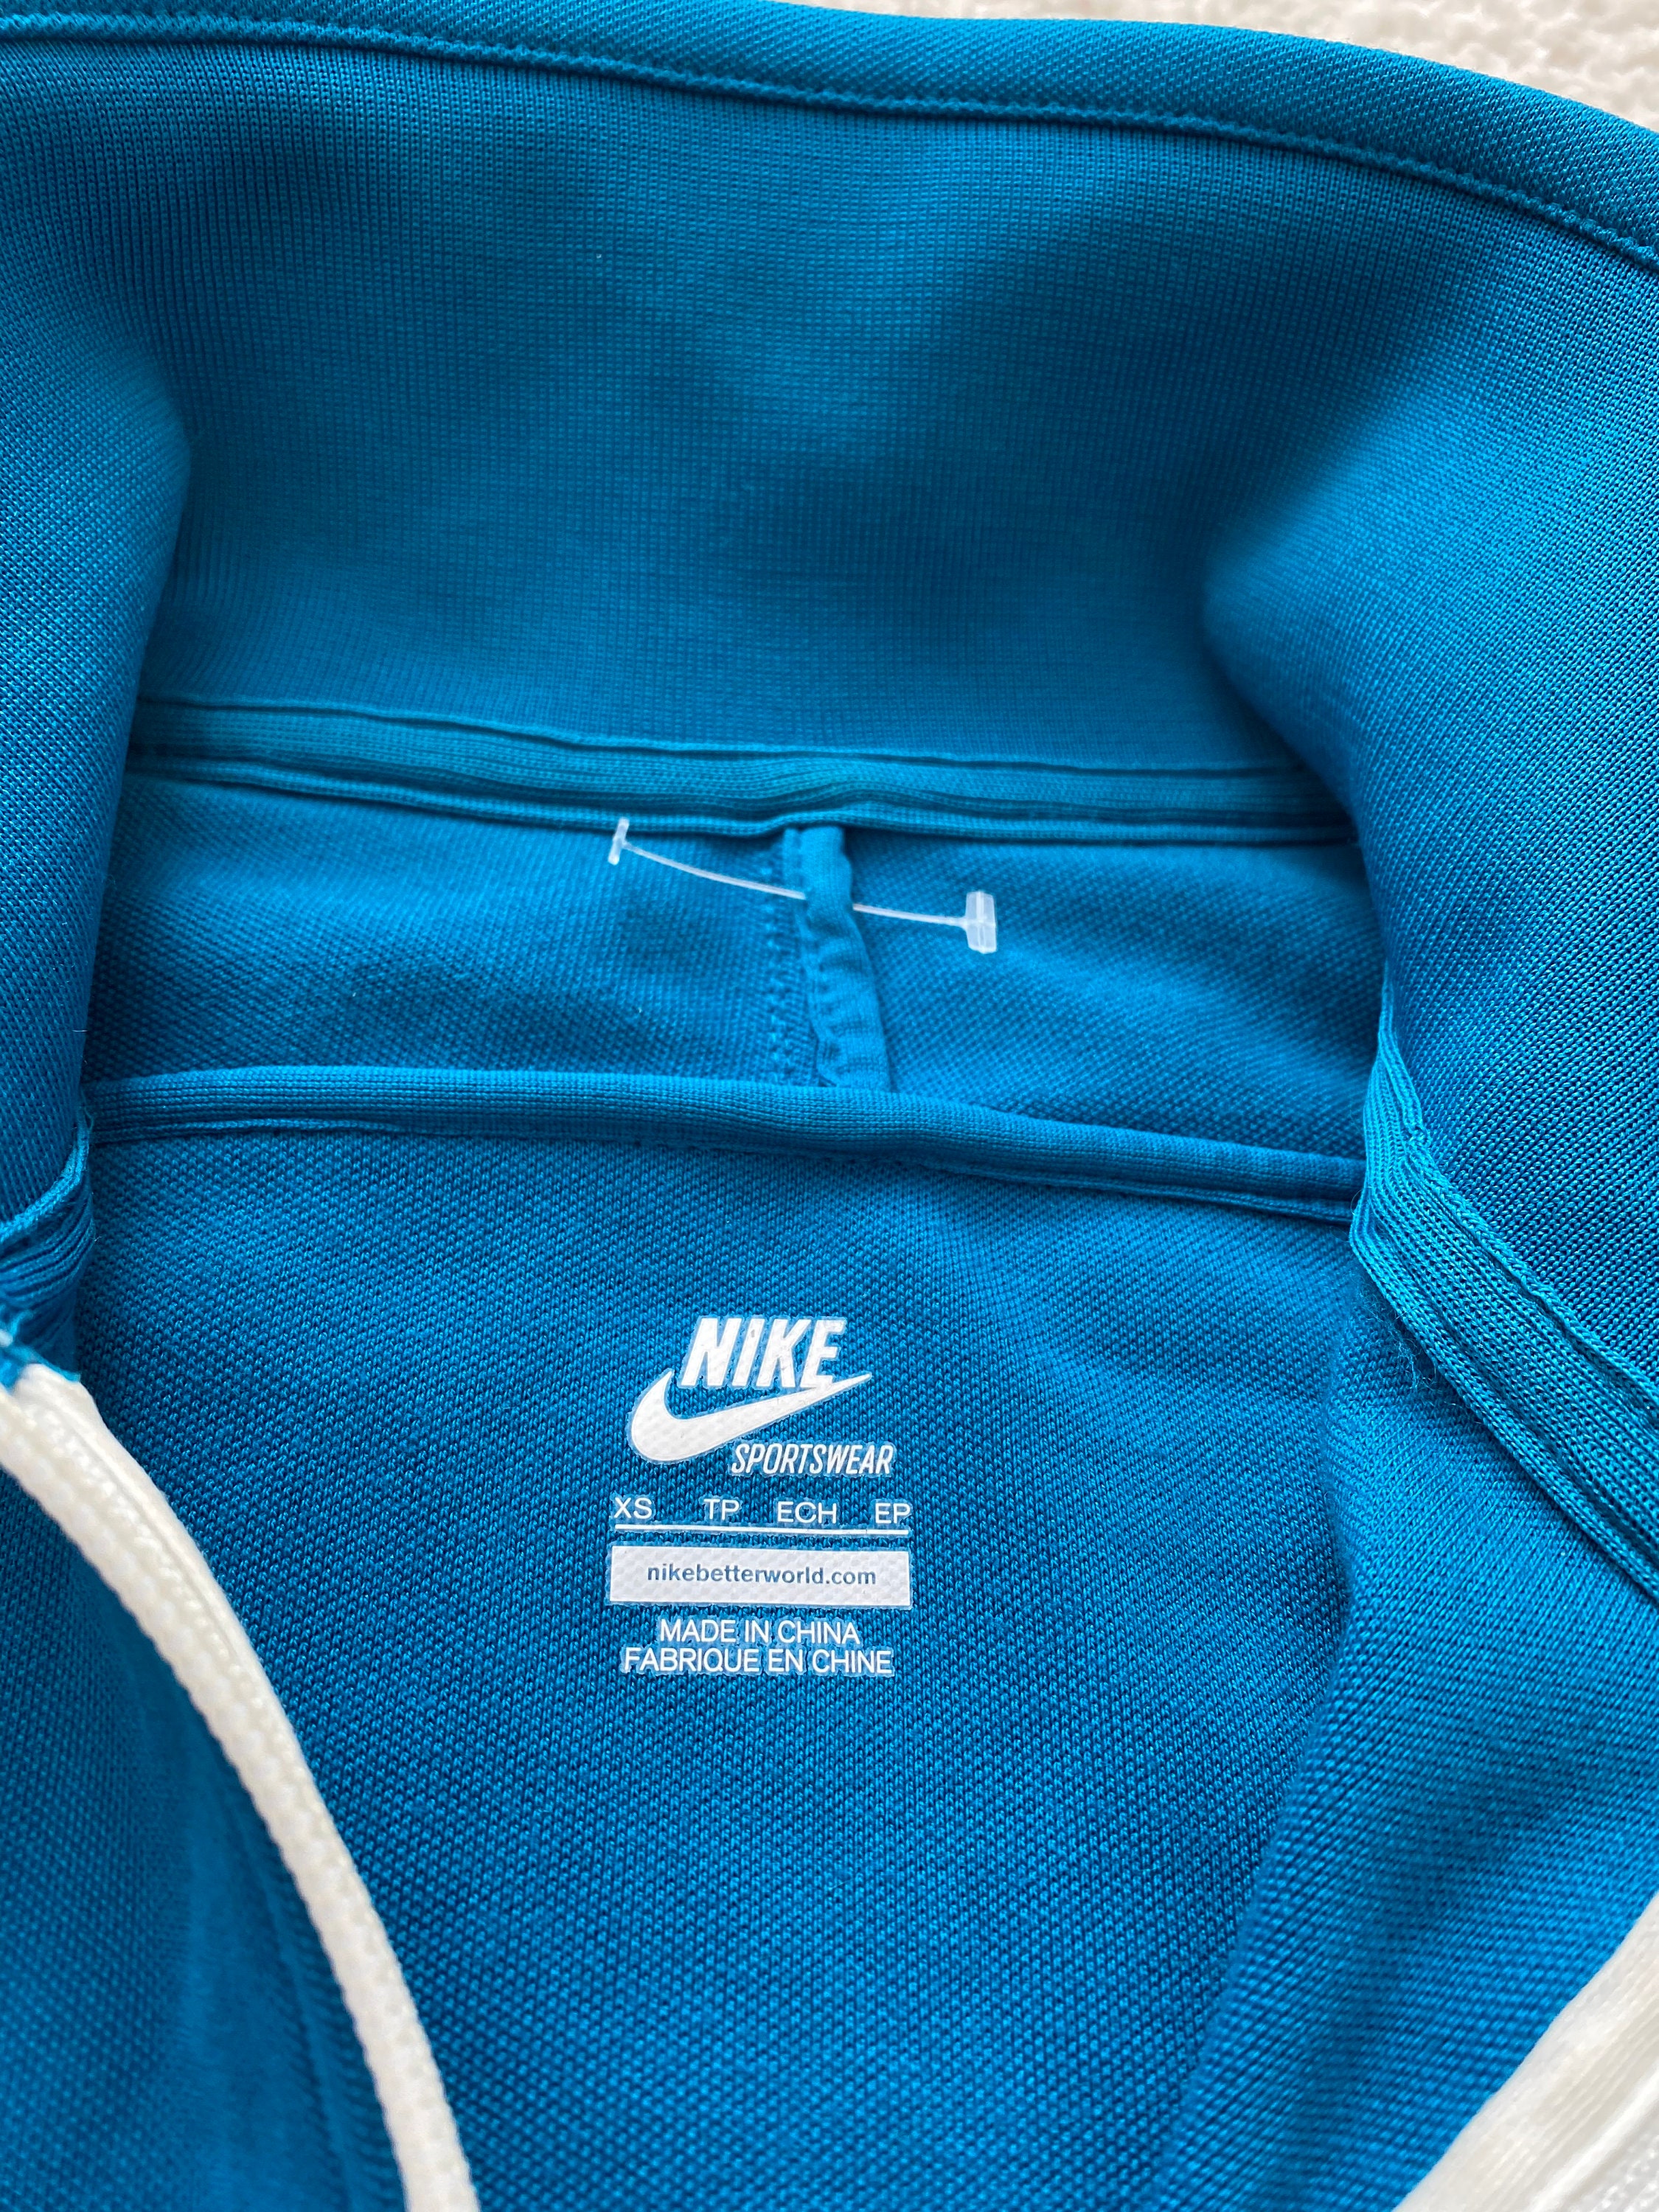 Nike Womens Tracksuit Top Jacket Sweatshirt Turquoise White - Etsy UK